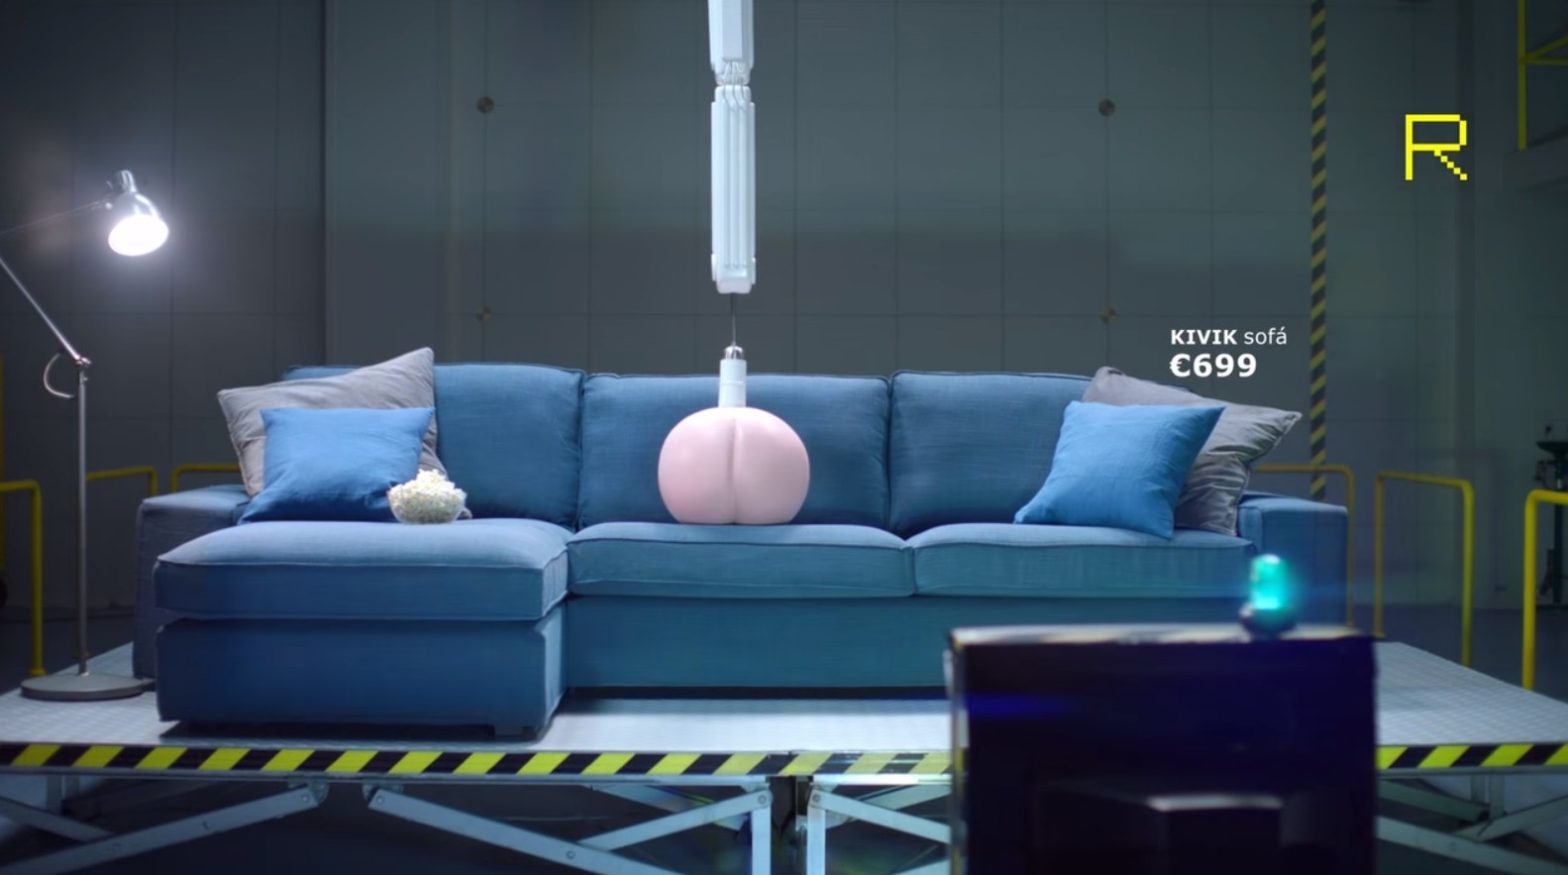 Campanha da IKEA incentiva testes de bumbum nos sofás da marca